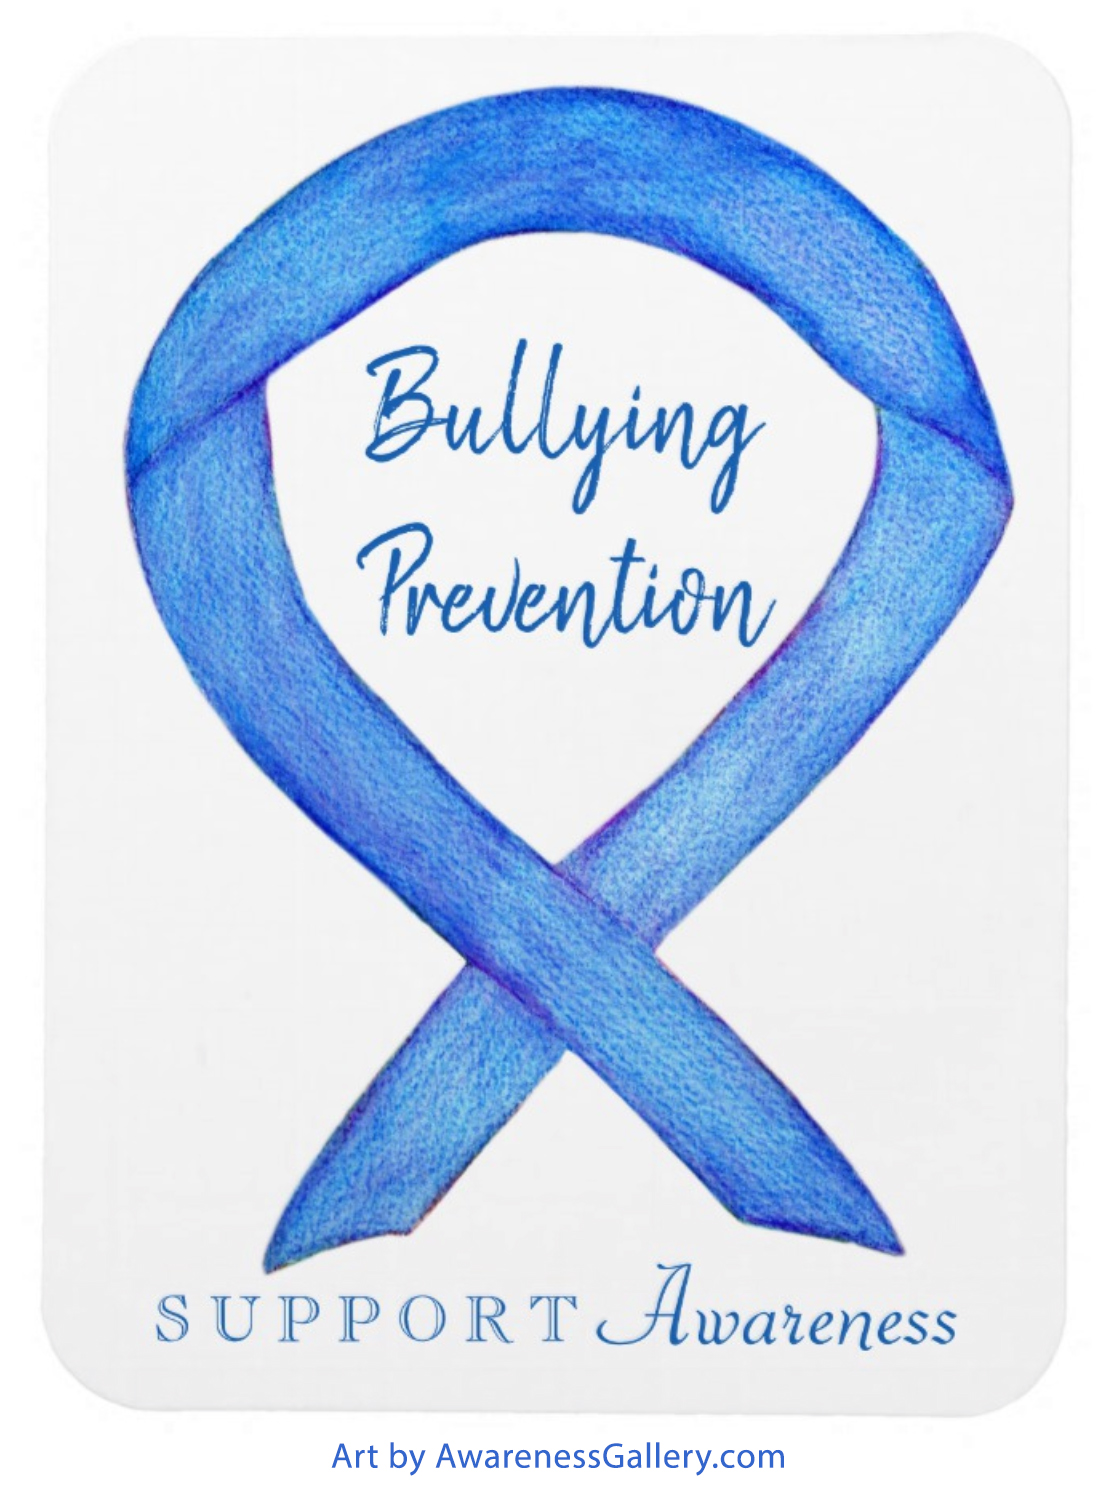 Bullying Prevention Awareness Ribbon Custom Merchandise for Sale